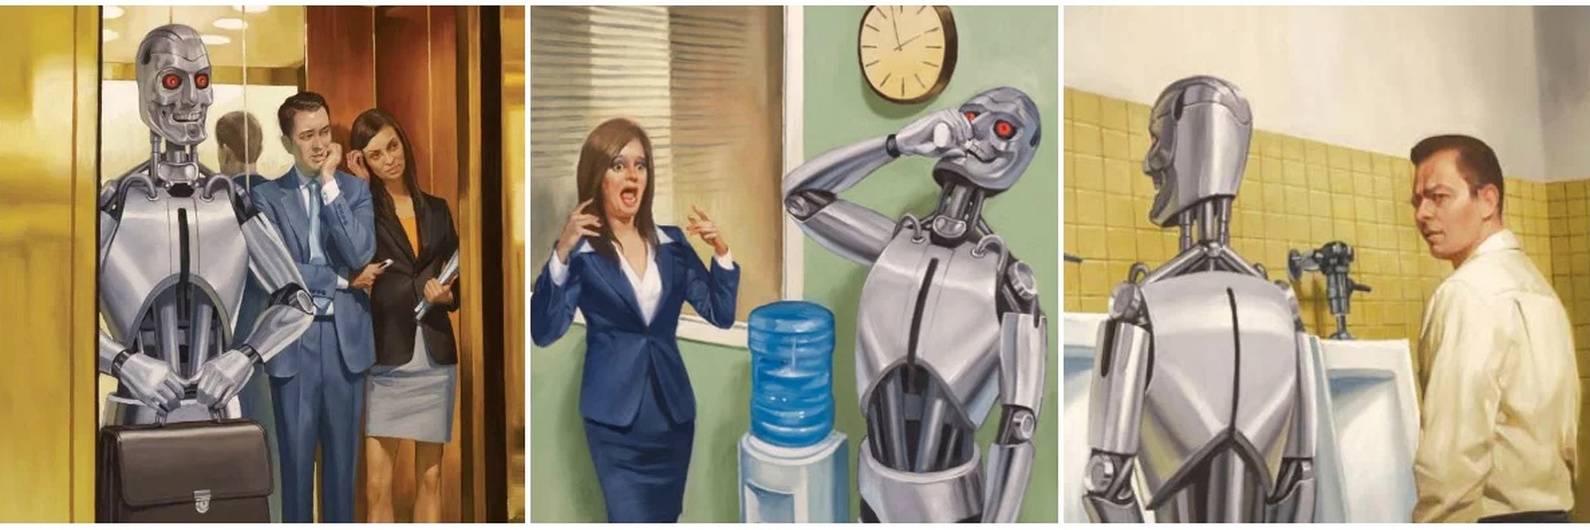 Люди станут роботами. Роботы вместо людей. Превращение человека в робота. Роботы заменят людей. Искусственный интеллект против человека.